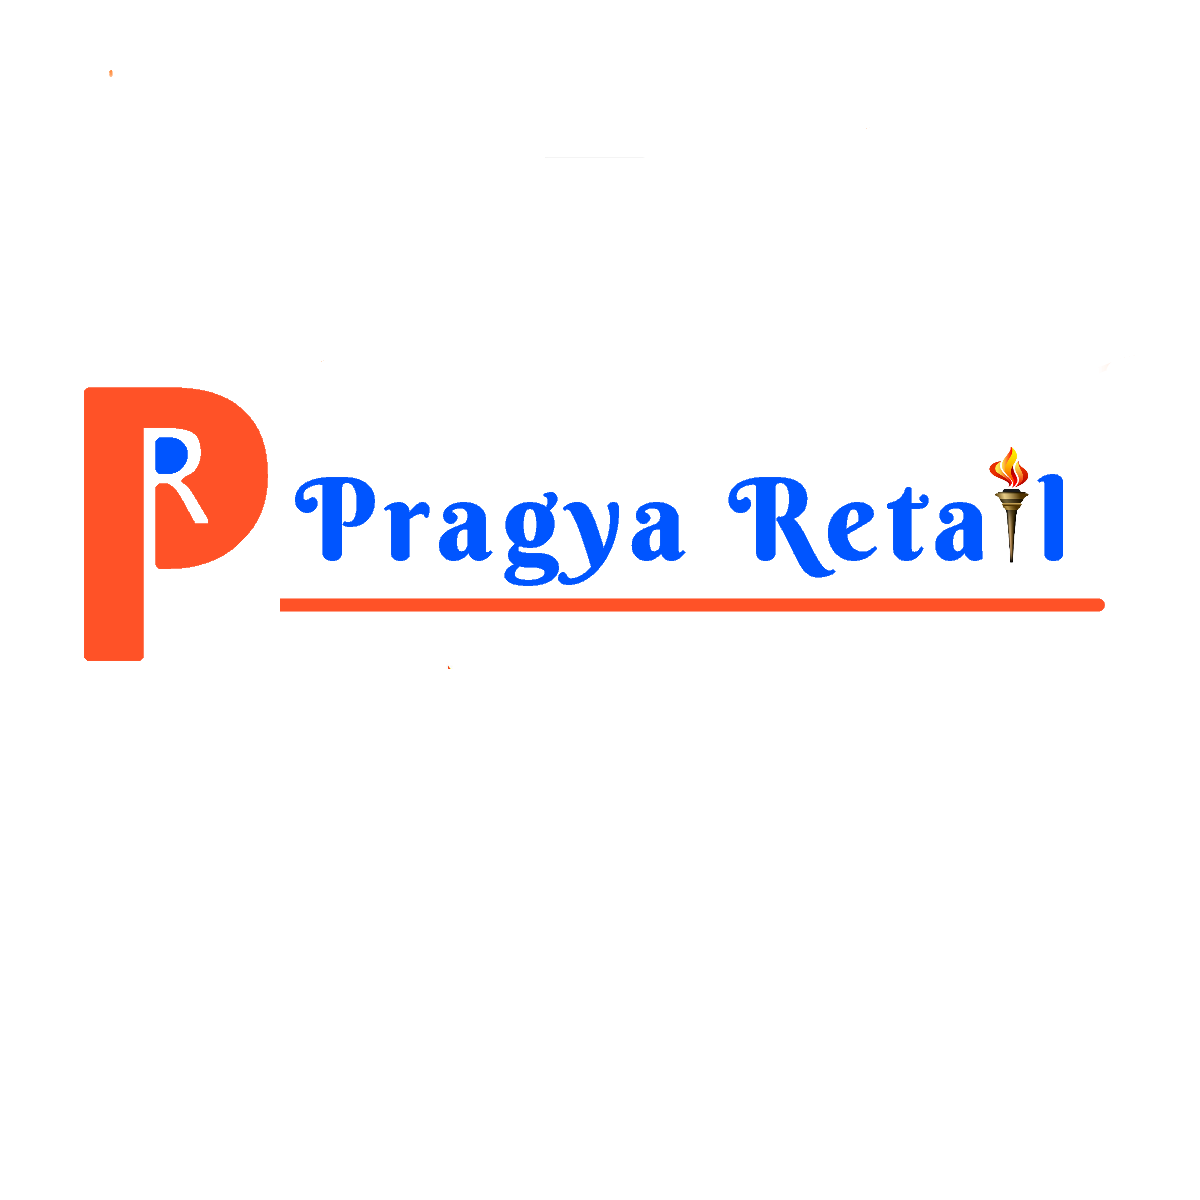 Pragya Communications Pvt Ltd